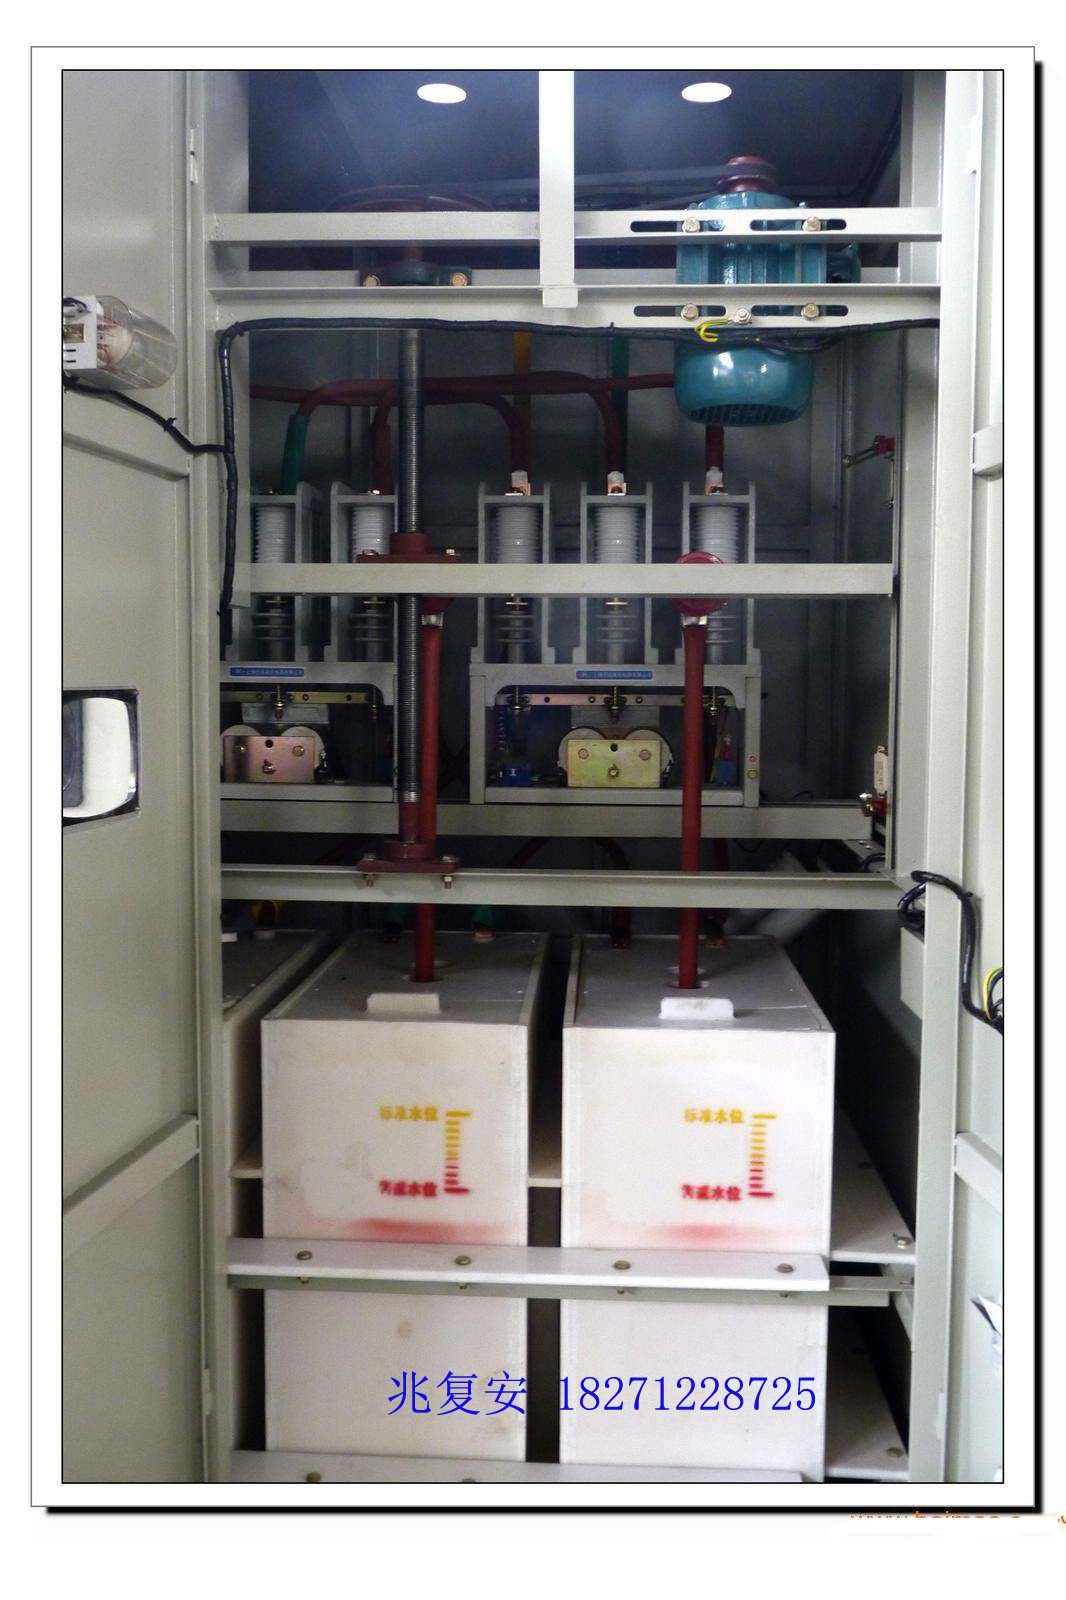 水泵液体电阻起动柜MHLS-1000高压笼型电机液体电阻起动柜示例图2